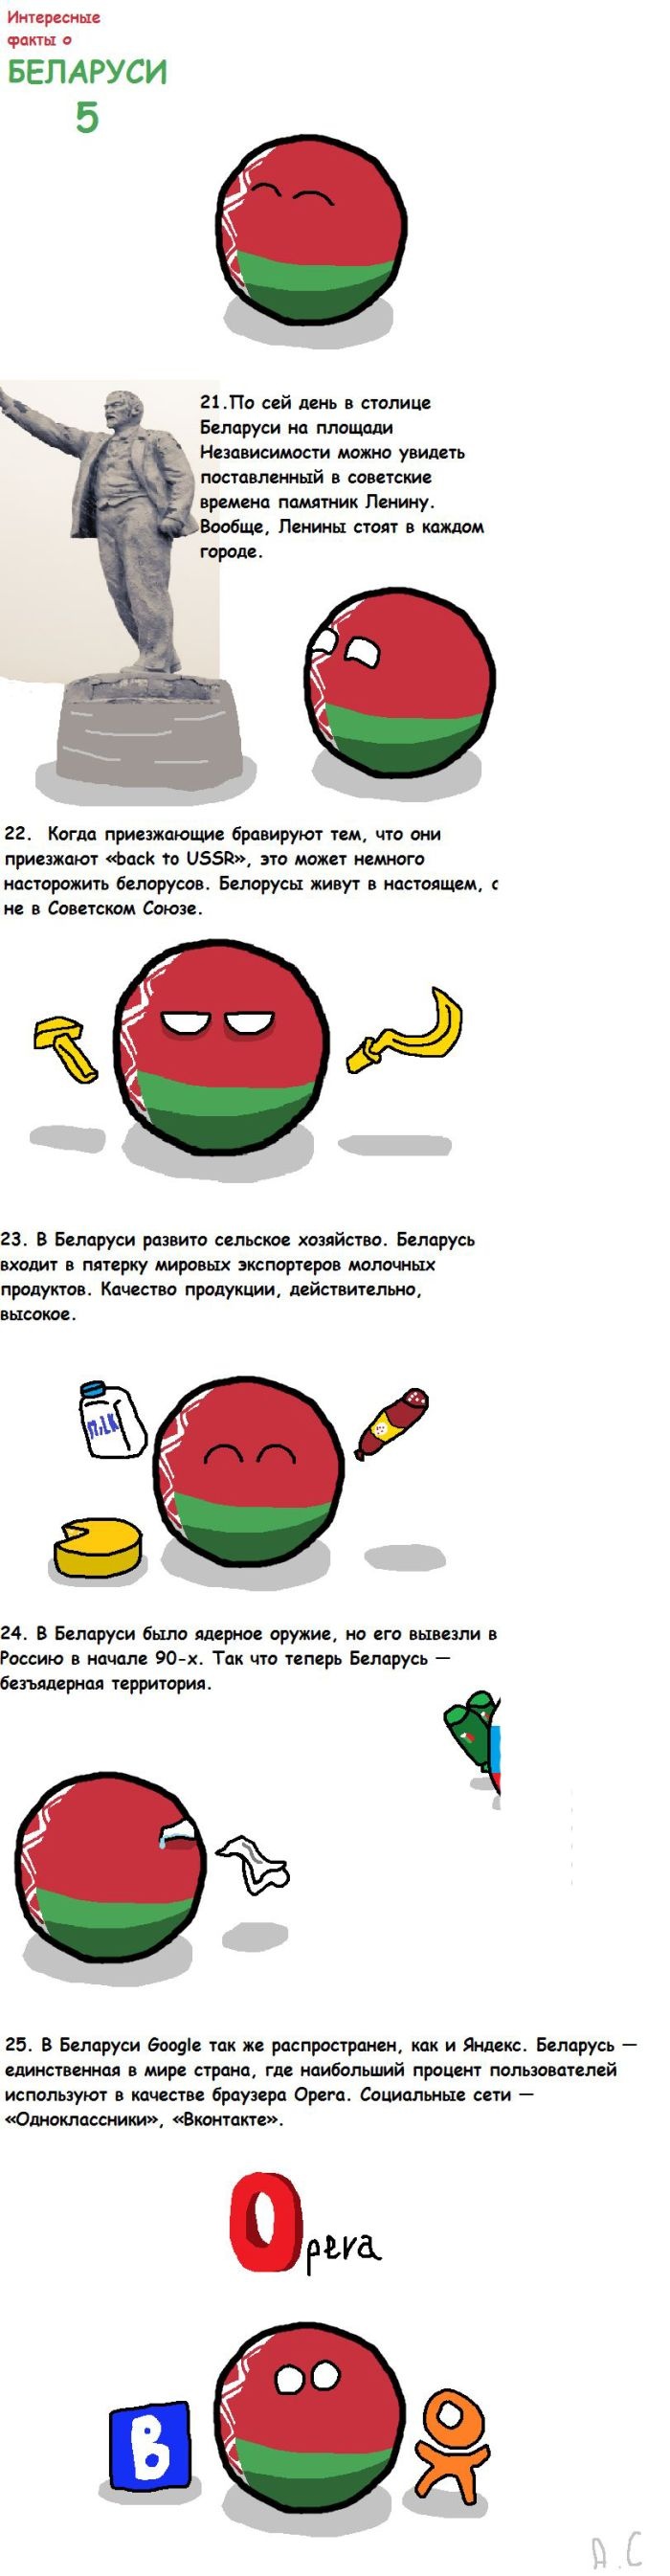 40 интересных фактов о Белоруссии